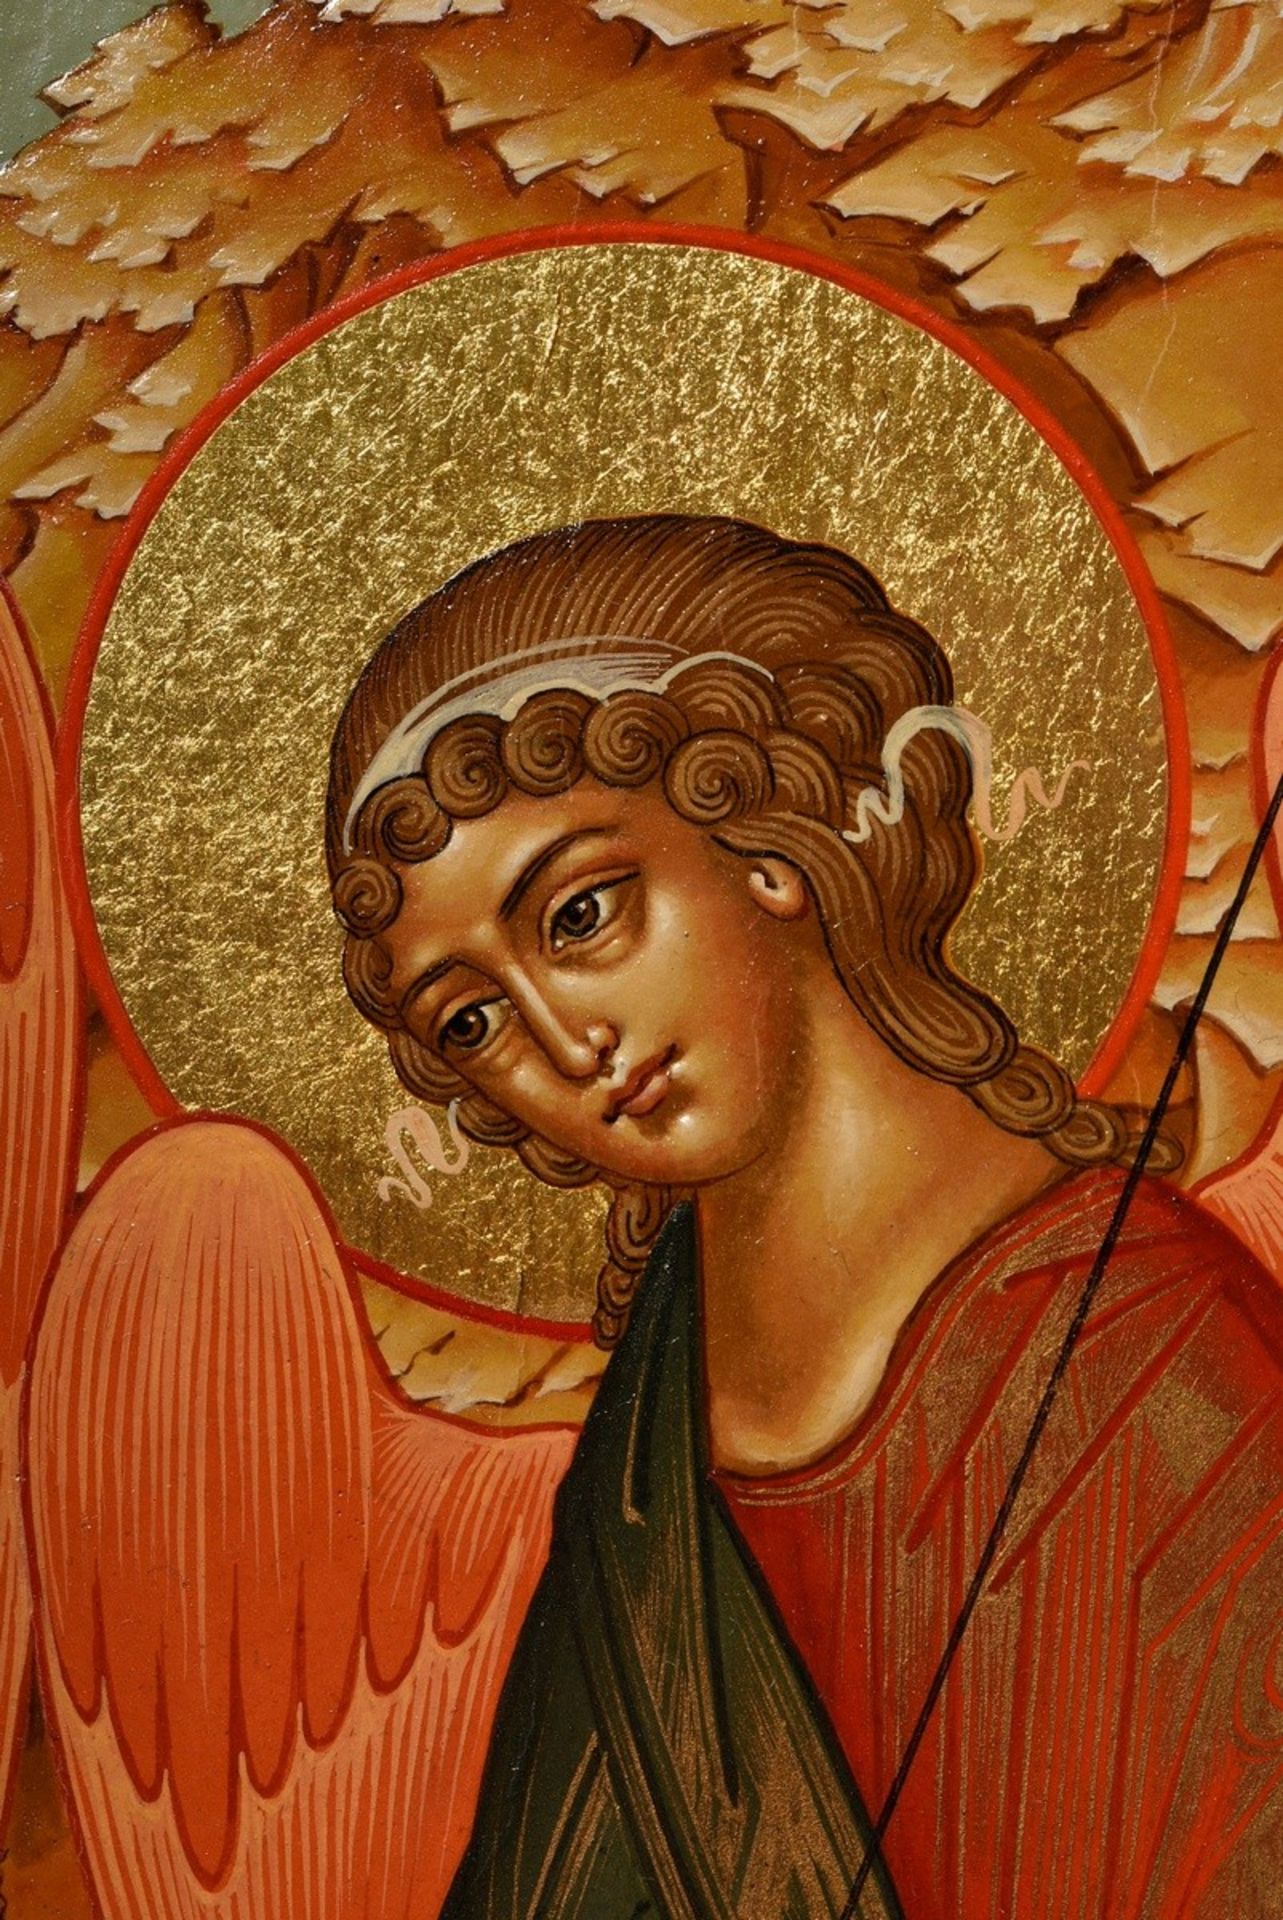 Russische Ikone "Heilige Dreifaltigkeit", alttestamentlicher Typus, 2002 nach altem Vorbild gemalt, - Bild 4 aus 6